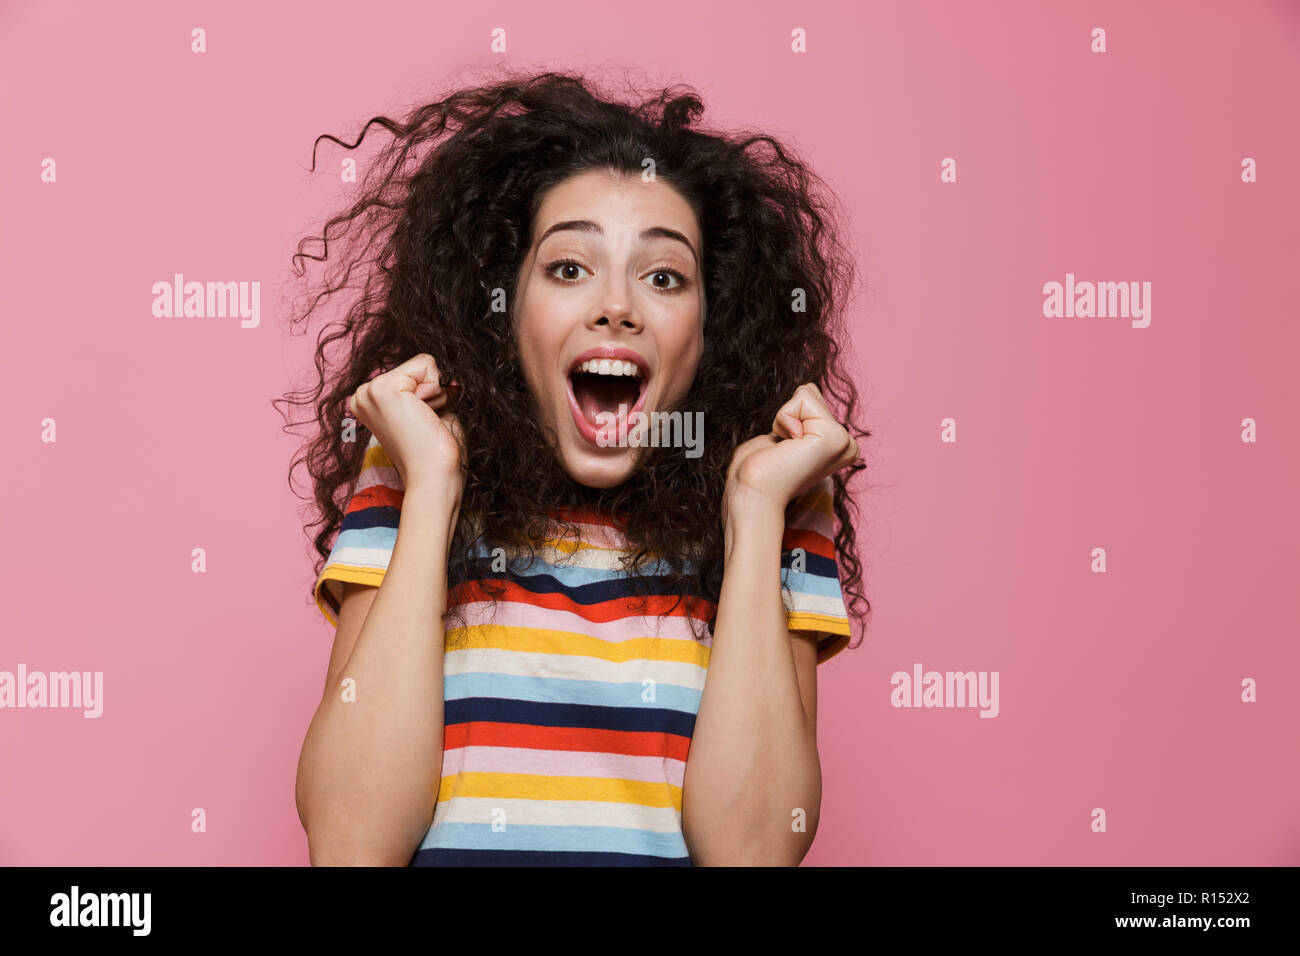 Image de femme étonné 20s avec les cheveux bouclés se réjouir et crier plus isolé sur fond rose Banque D'Images